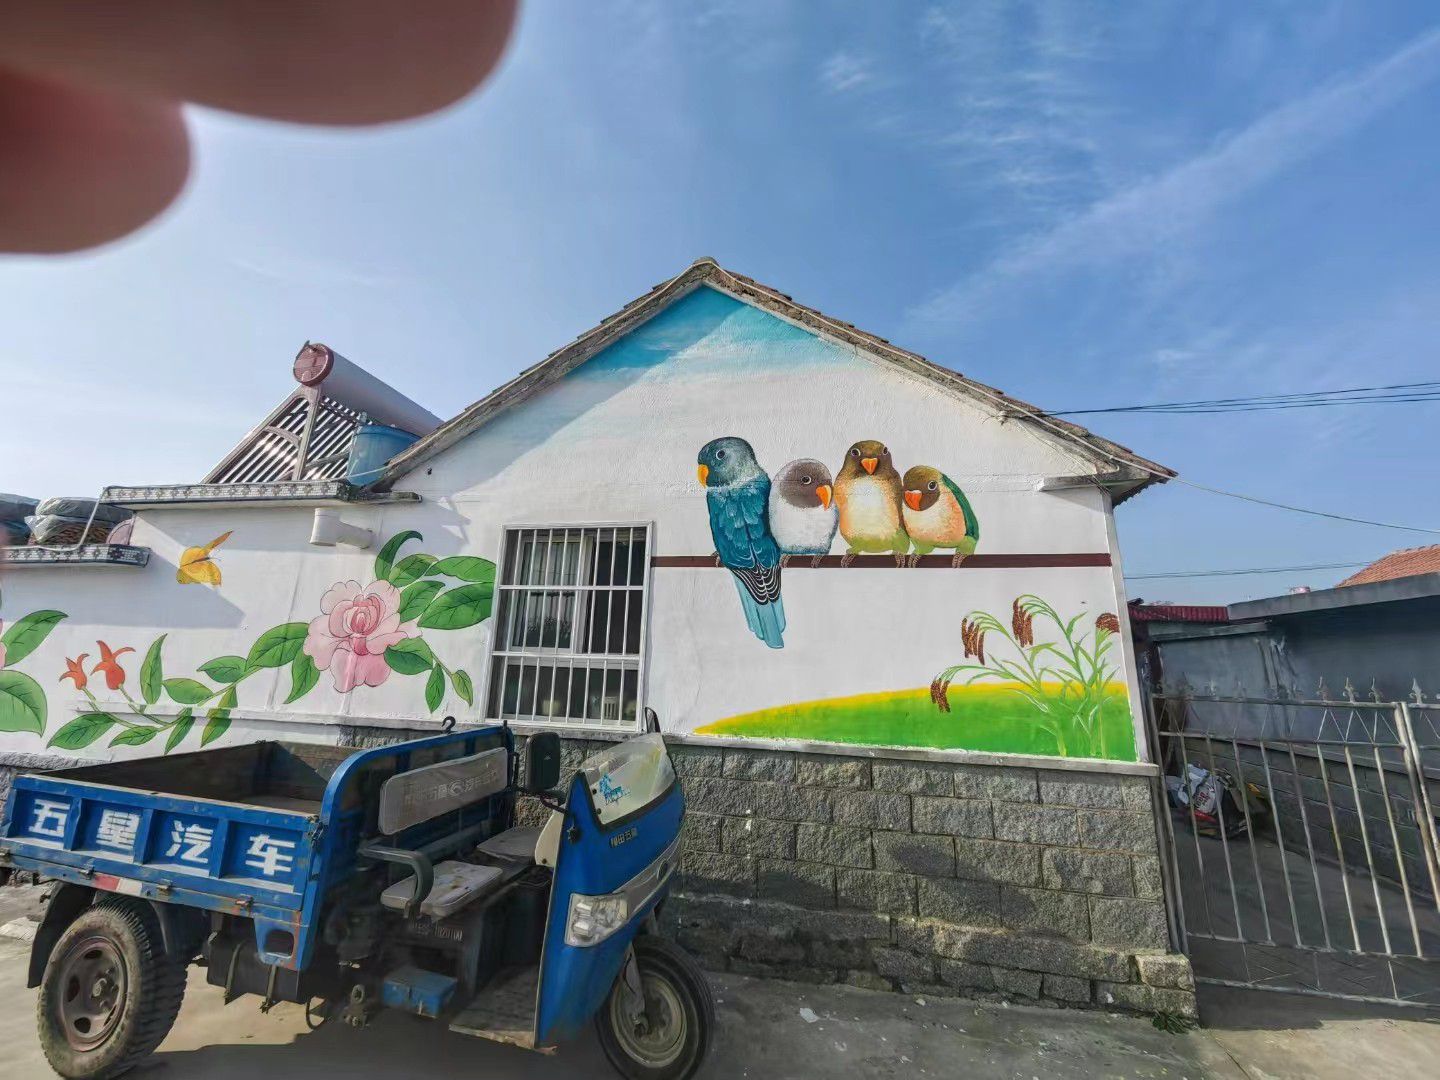 廊坊霸州幼儿园壁画下游需求无改变价格难度增加